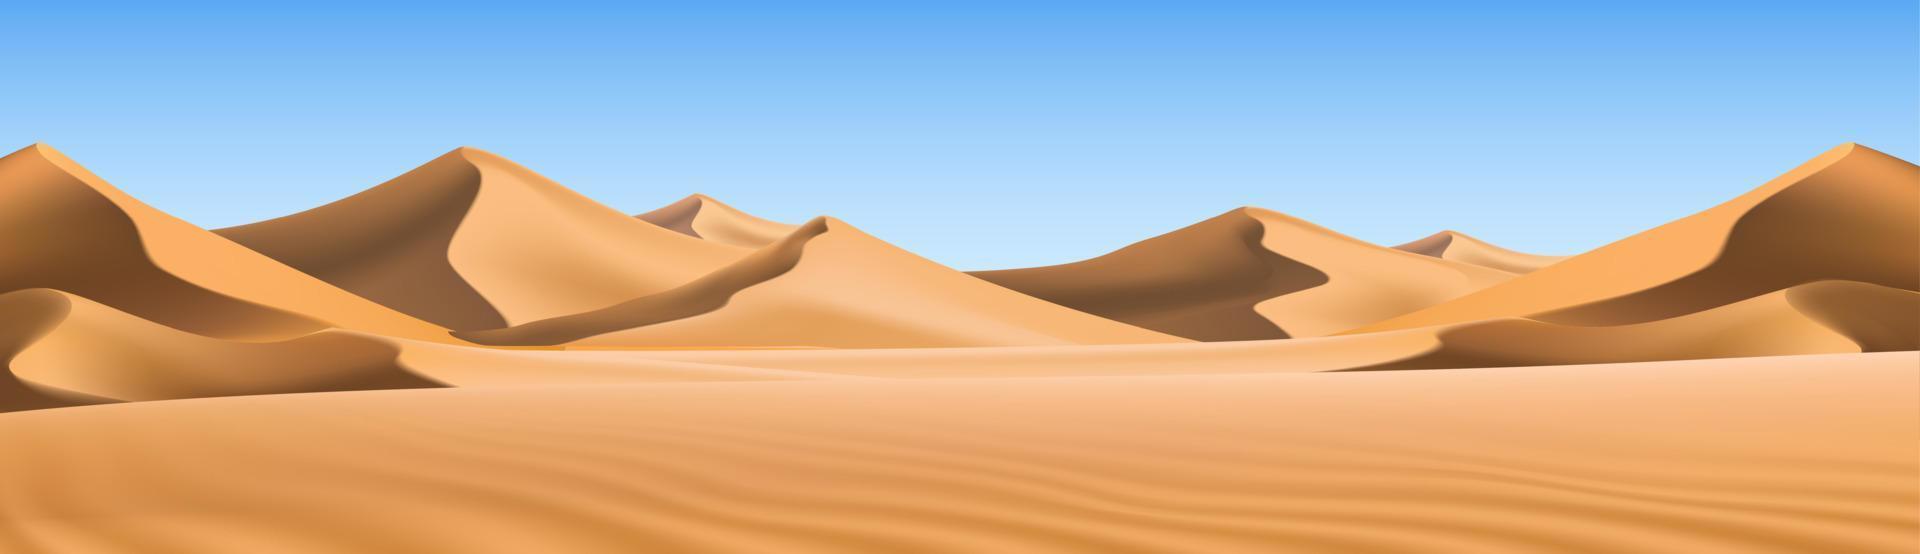 grote 3D-realistische achtergrond van zandduinen. woestijnlandschap met blauwe lucht. vector